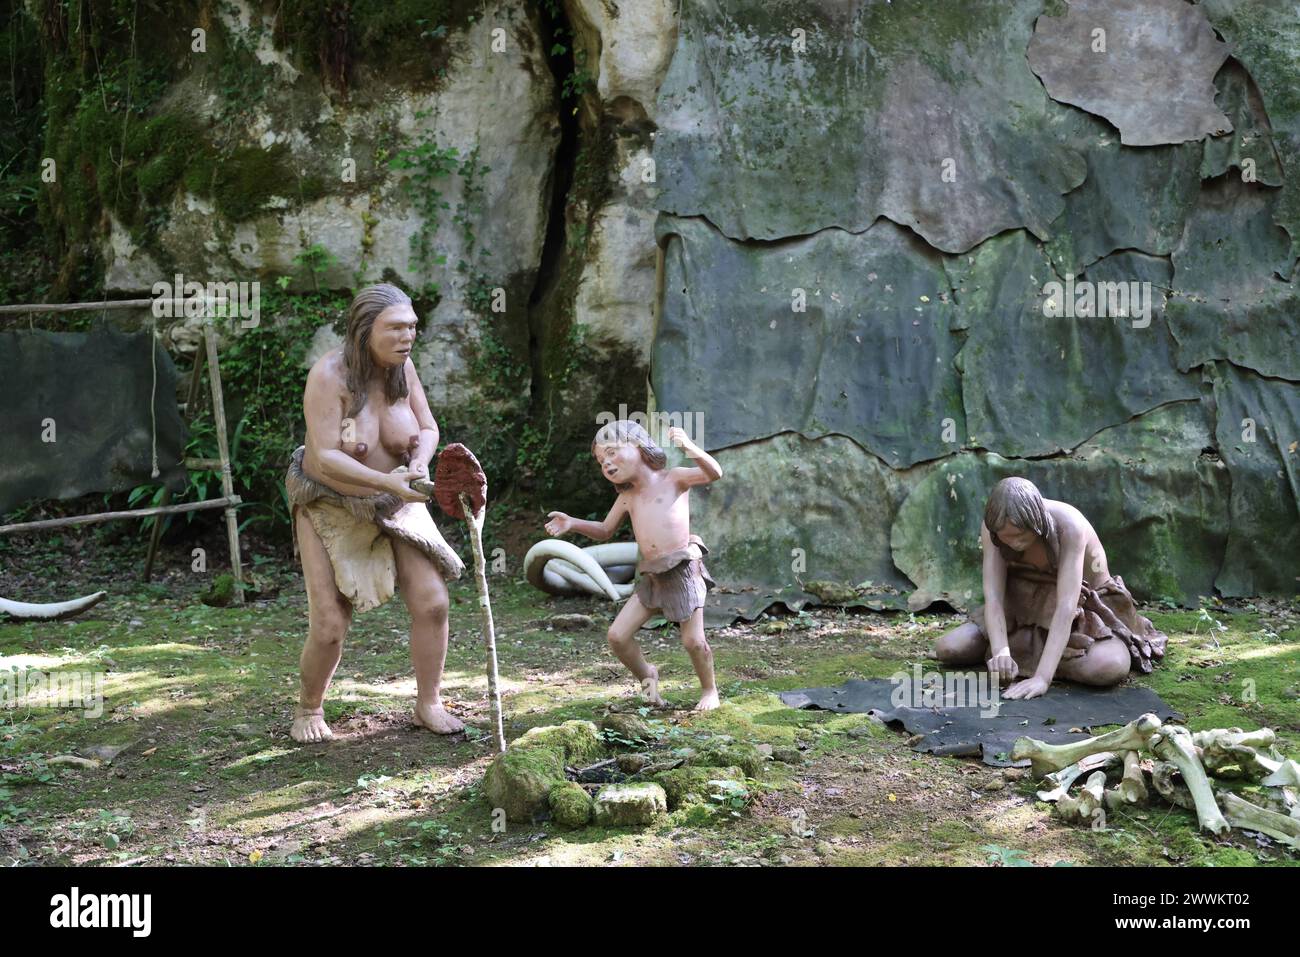 Scène de vie durant la préhistoire reconstruite au Parc Préhisto dans la vallée de la Vézère en Périgord Noir dans la région des grottes de Lascaux. Tursac, Pér Banque D'Images